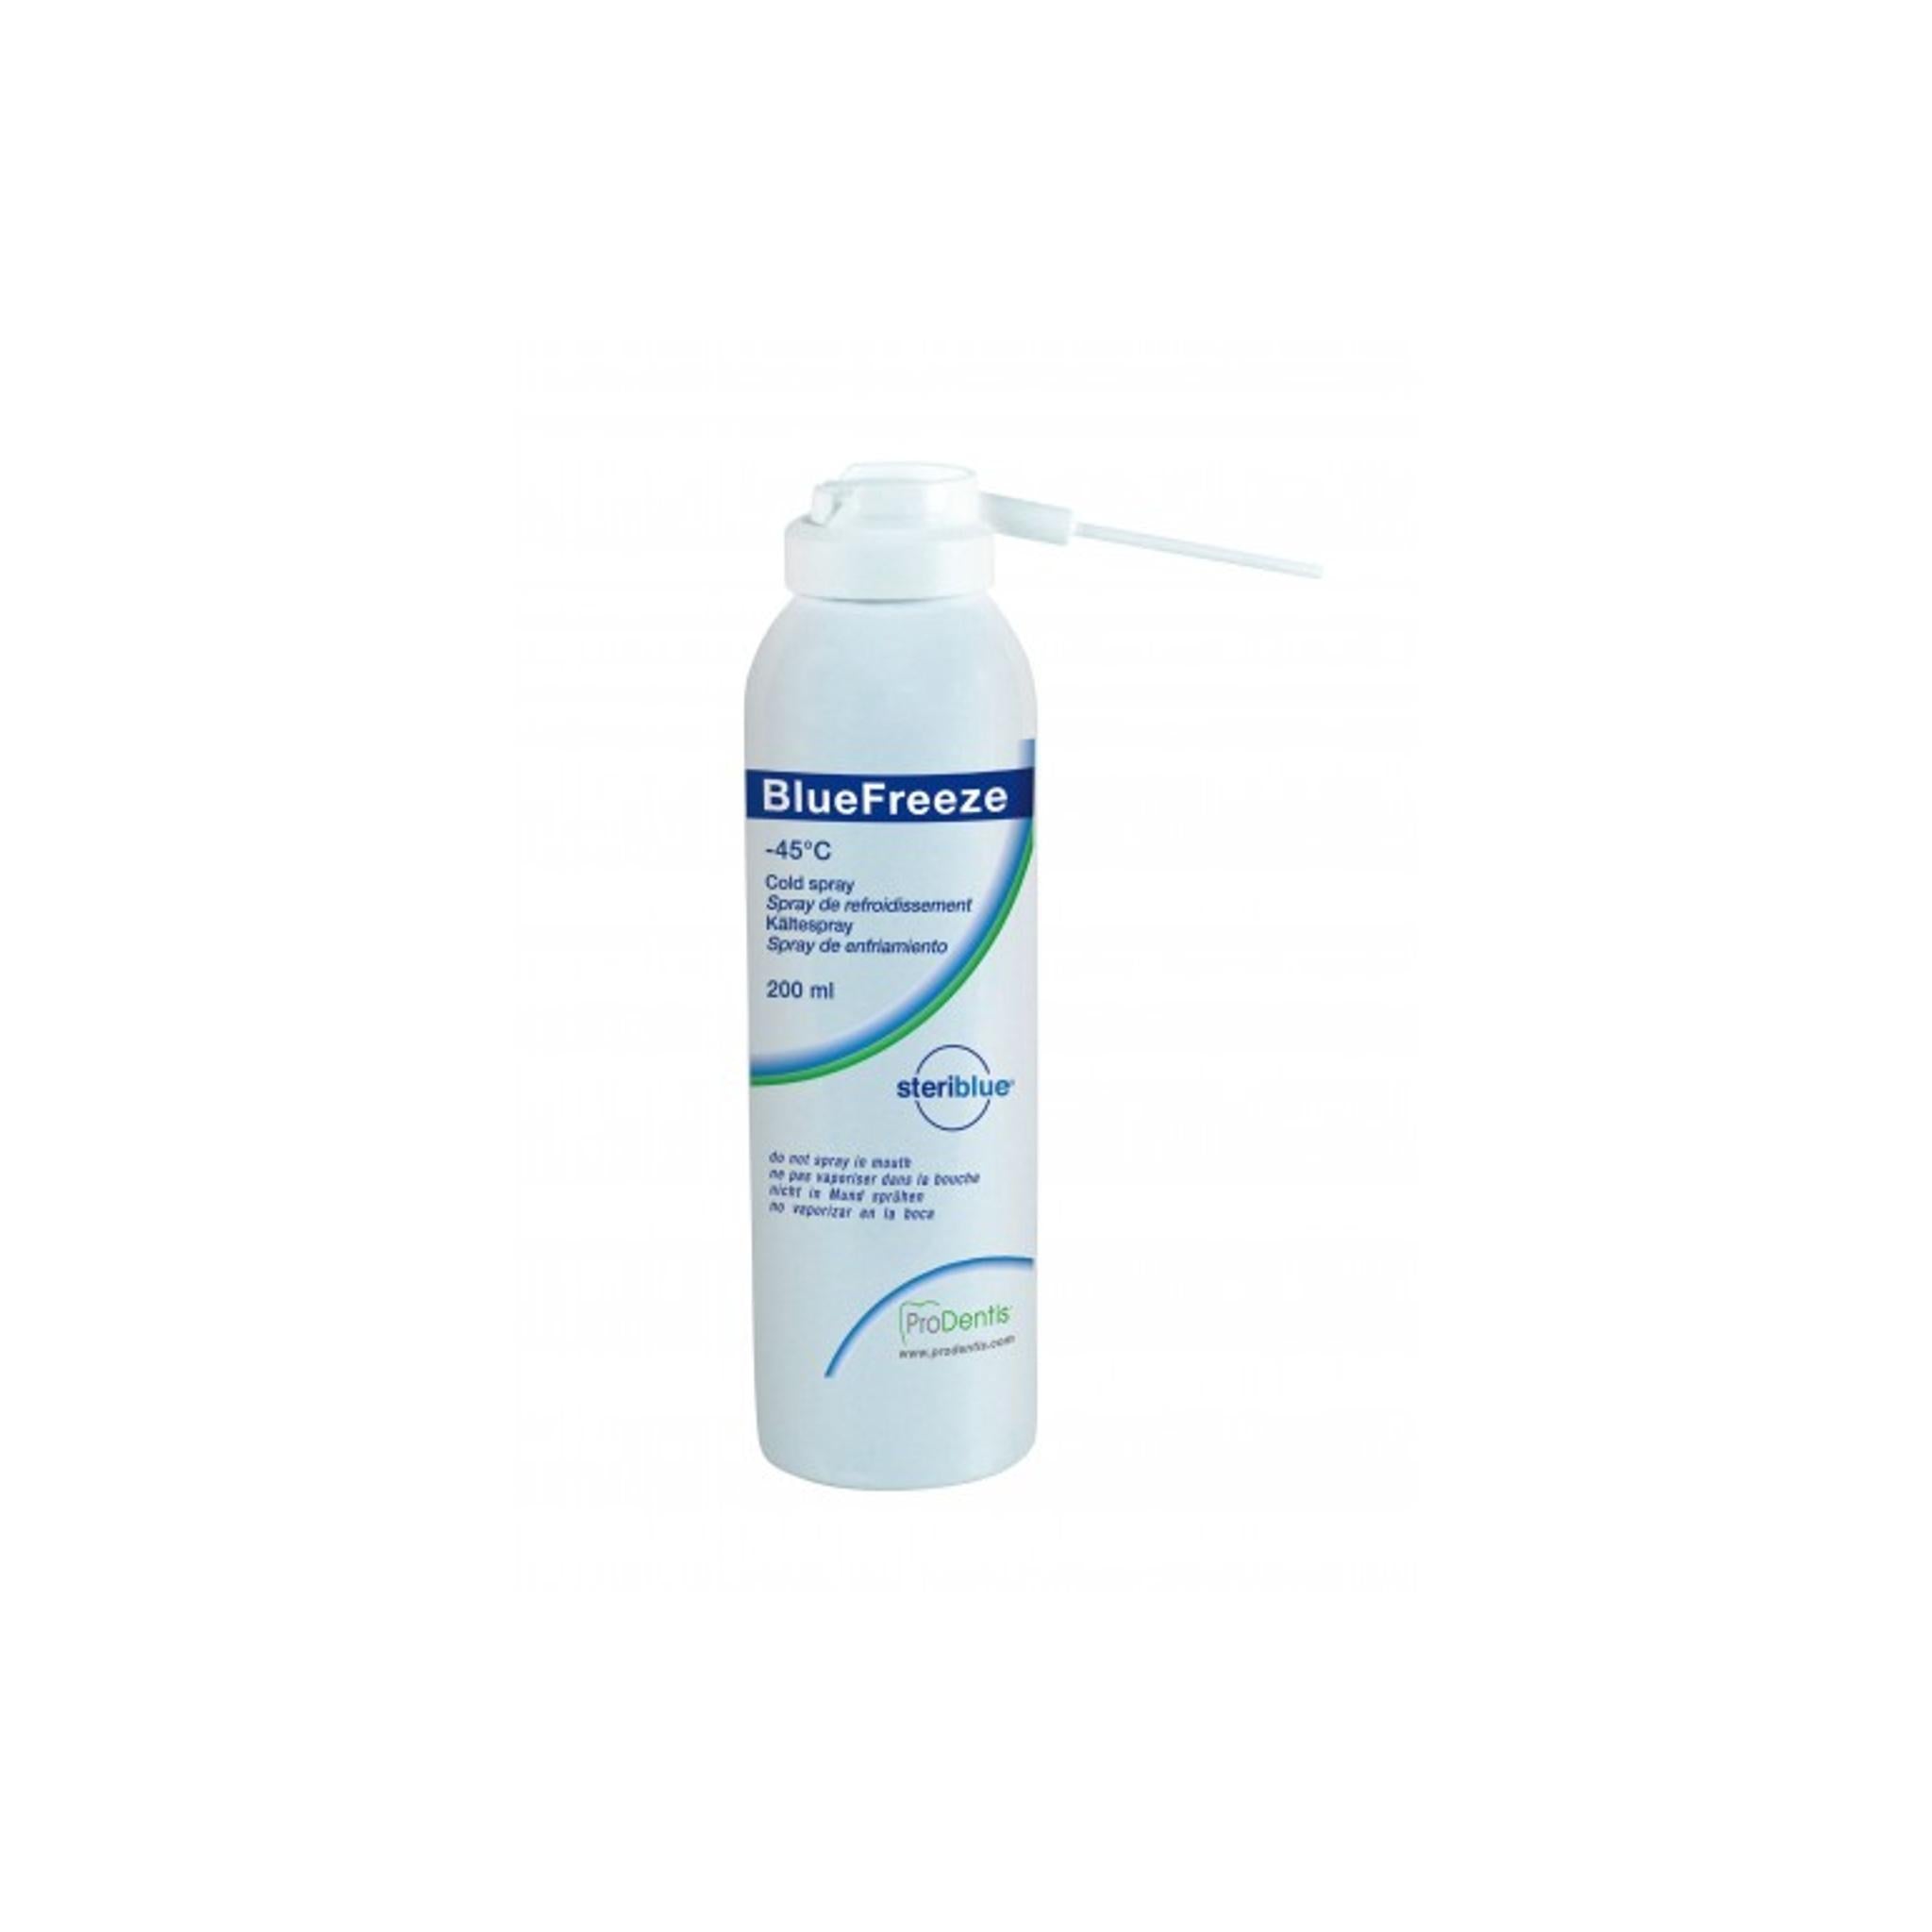 Spray de refroidissement pour traitement des verrues -45°C - 200 ml - Steriblue